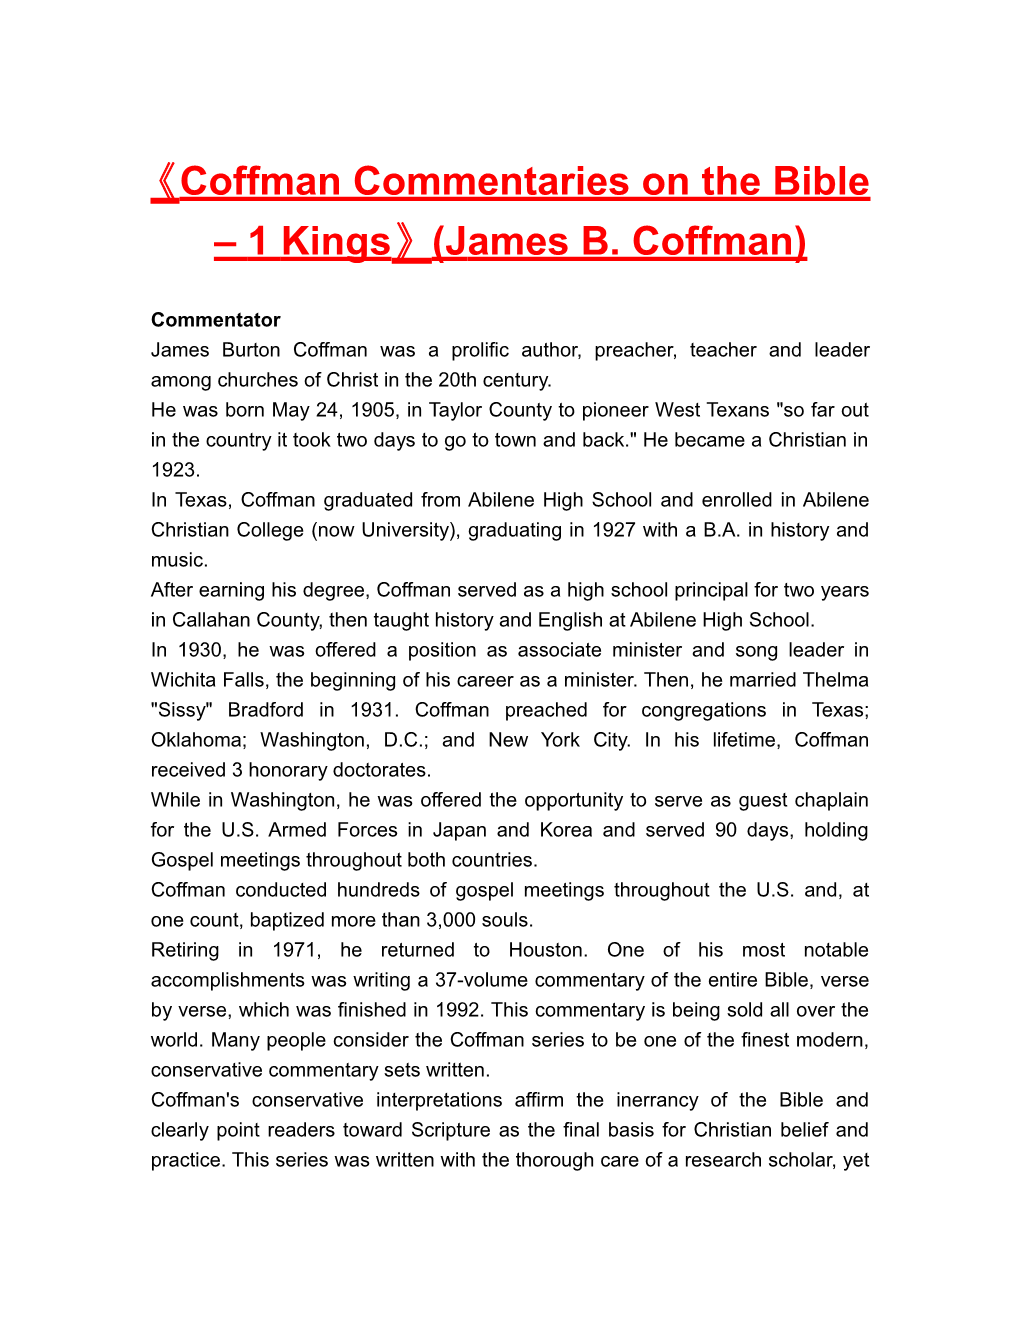 Coffman Commentaries on the Bible 1 Kings (James B. Coffman)